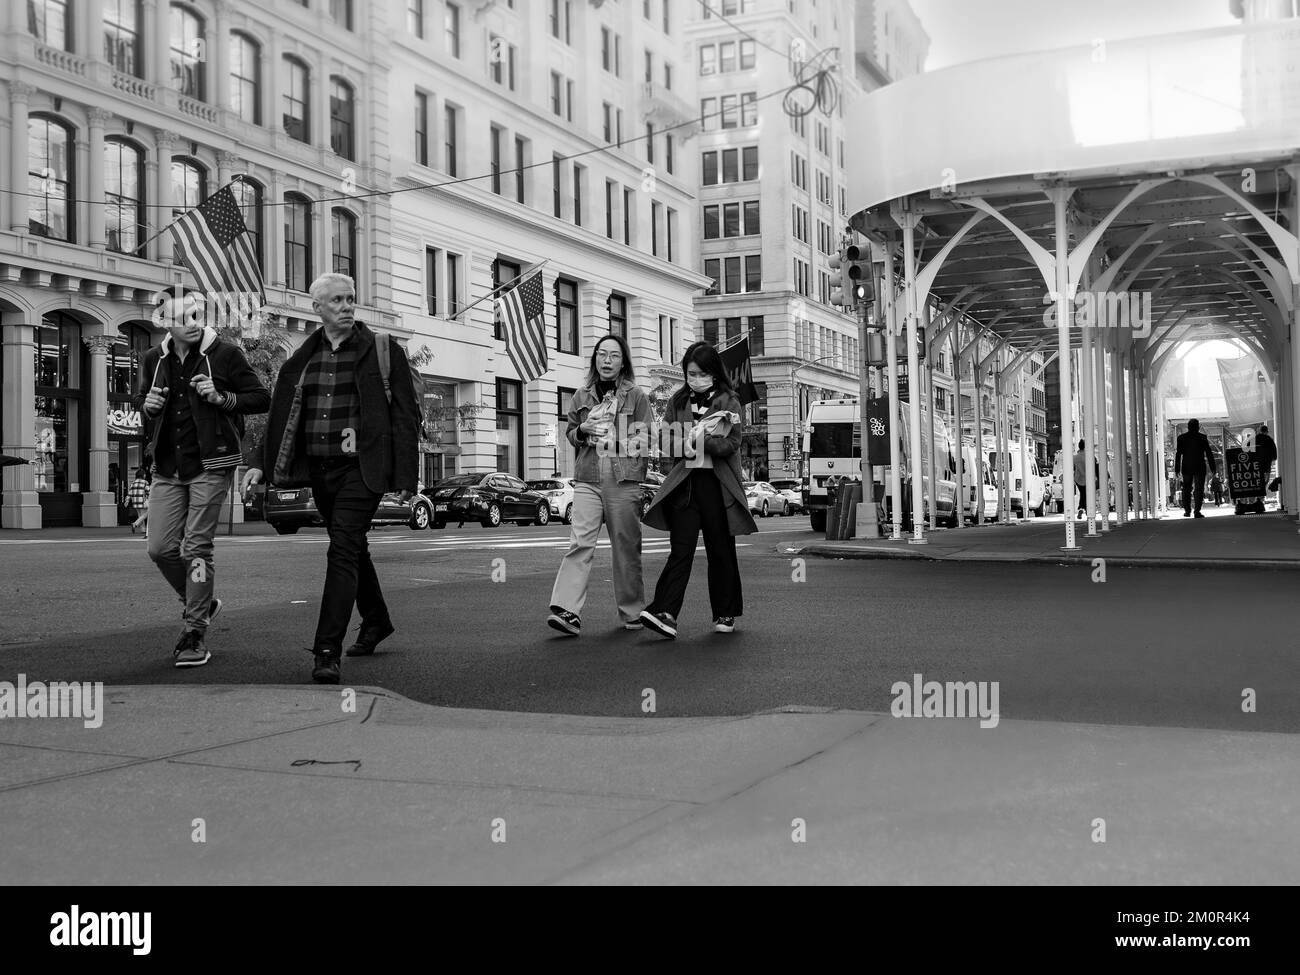 Geschäftsleute und asiatische Frauen überqueren die Straße in New York City - Schwarz-Weiß-Straßenfotografie, Manhattan, USA. Stockfoto